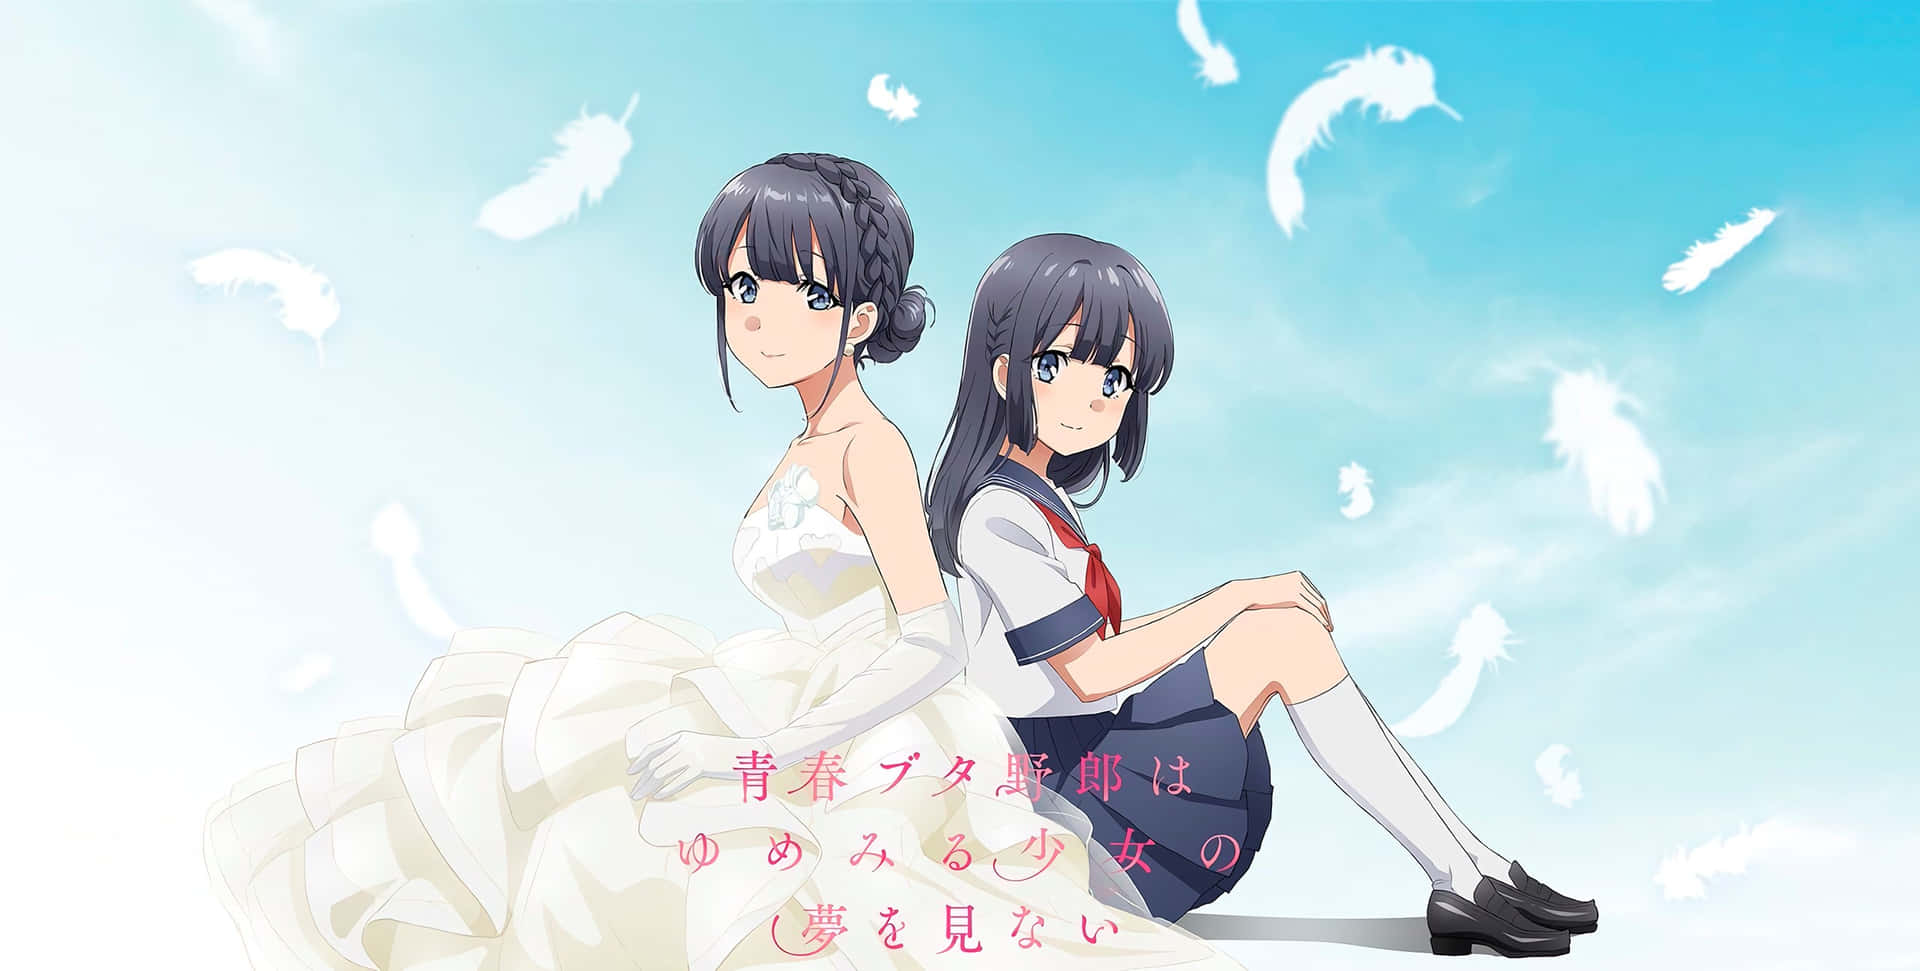 Abnormal Anime Girls Sitting Wallpaper